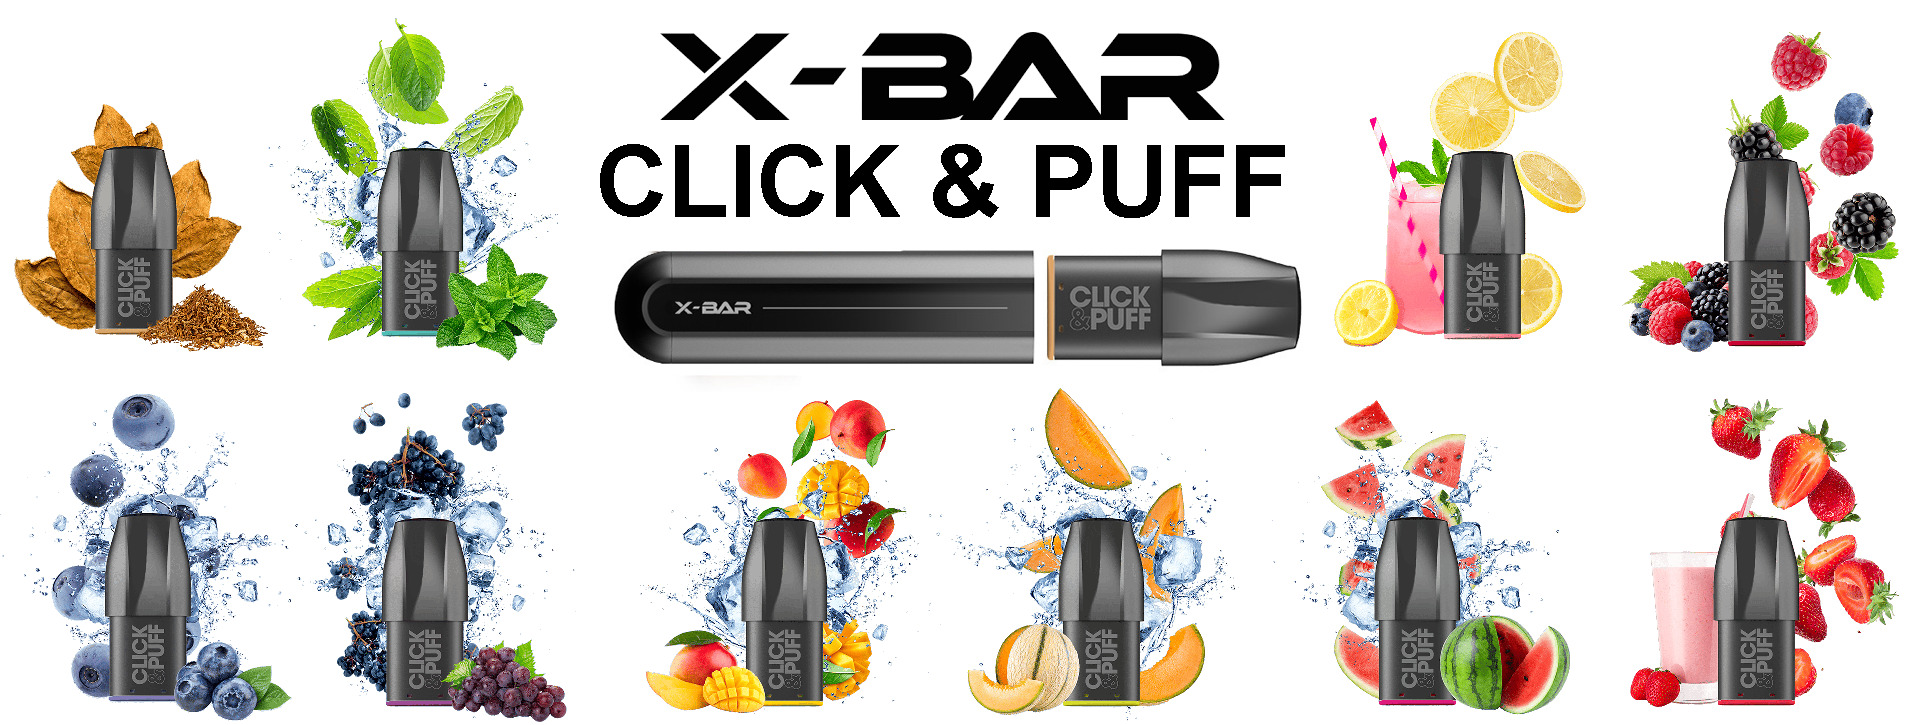 X-BAR Click & Puff